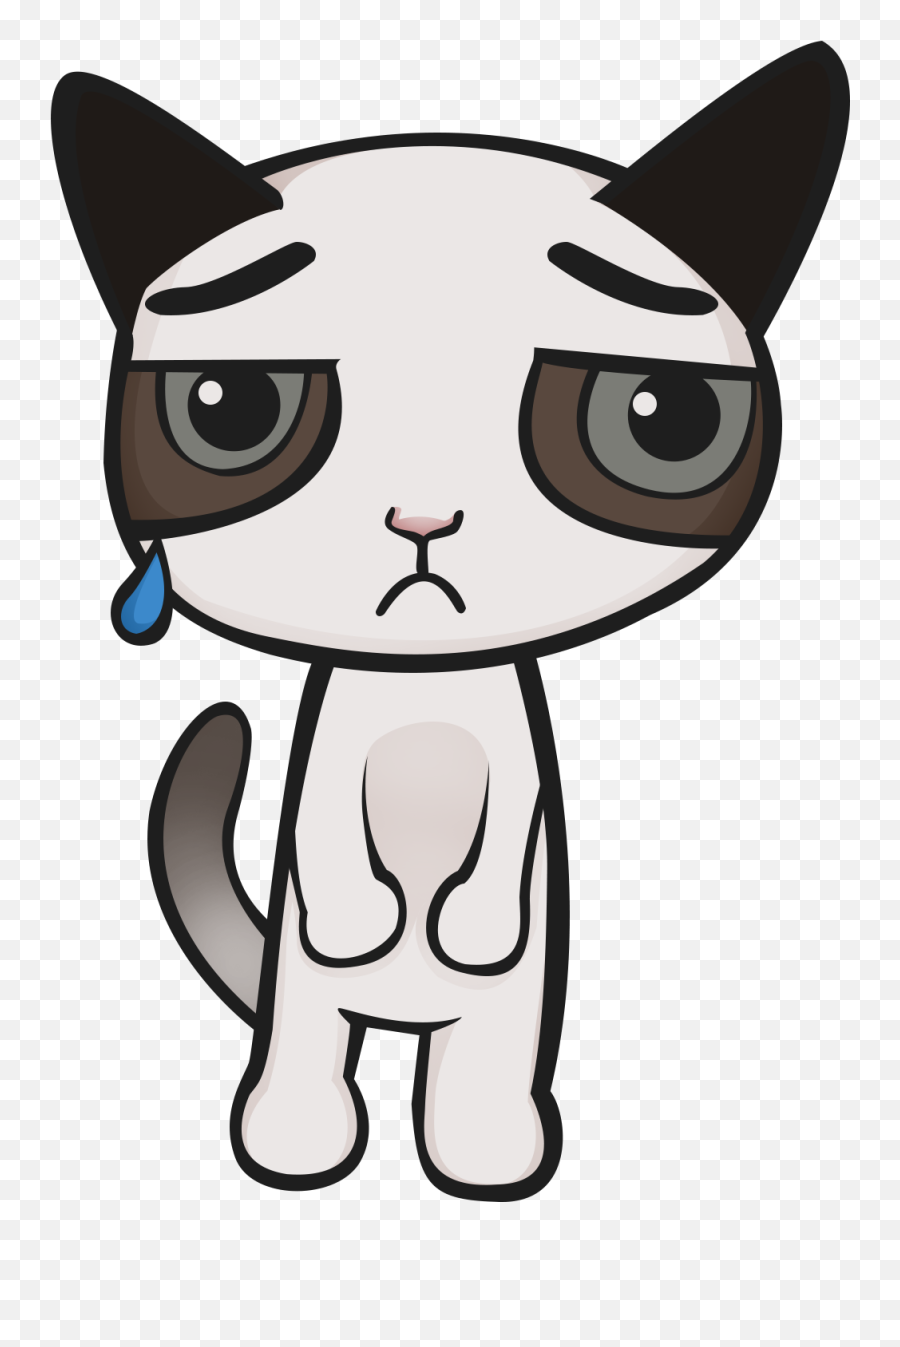 Cat Food Clip Art - Sad Cat Gif Png Transparent Cartoon Sad Cat Clipart Transparent Background Emoji,Clipart - Cat